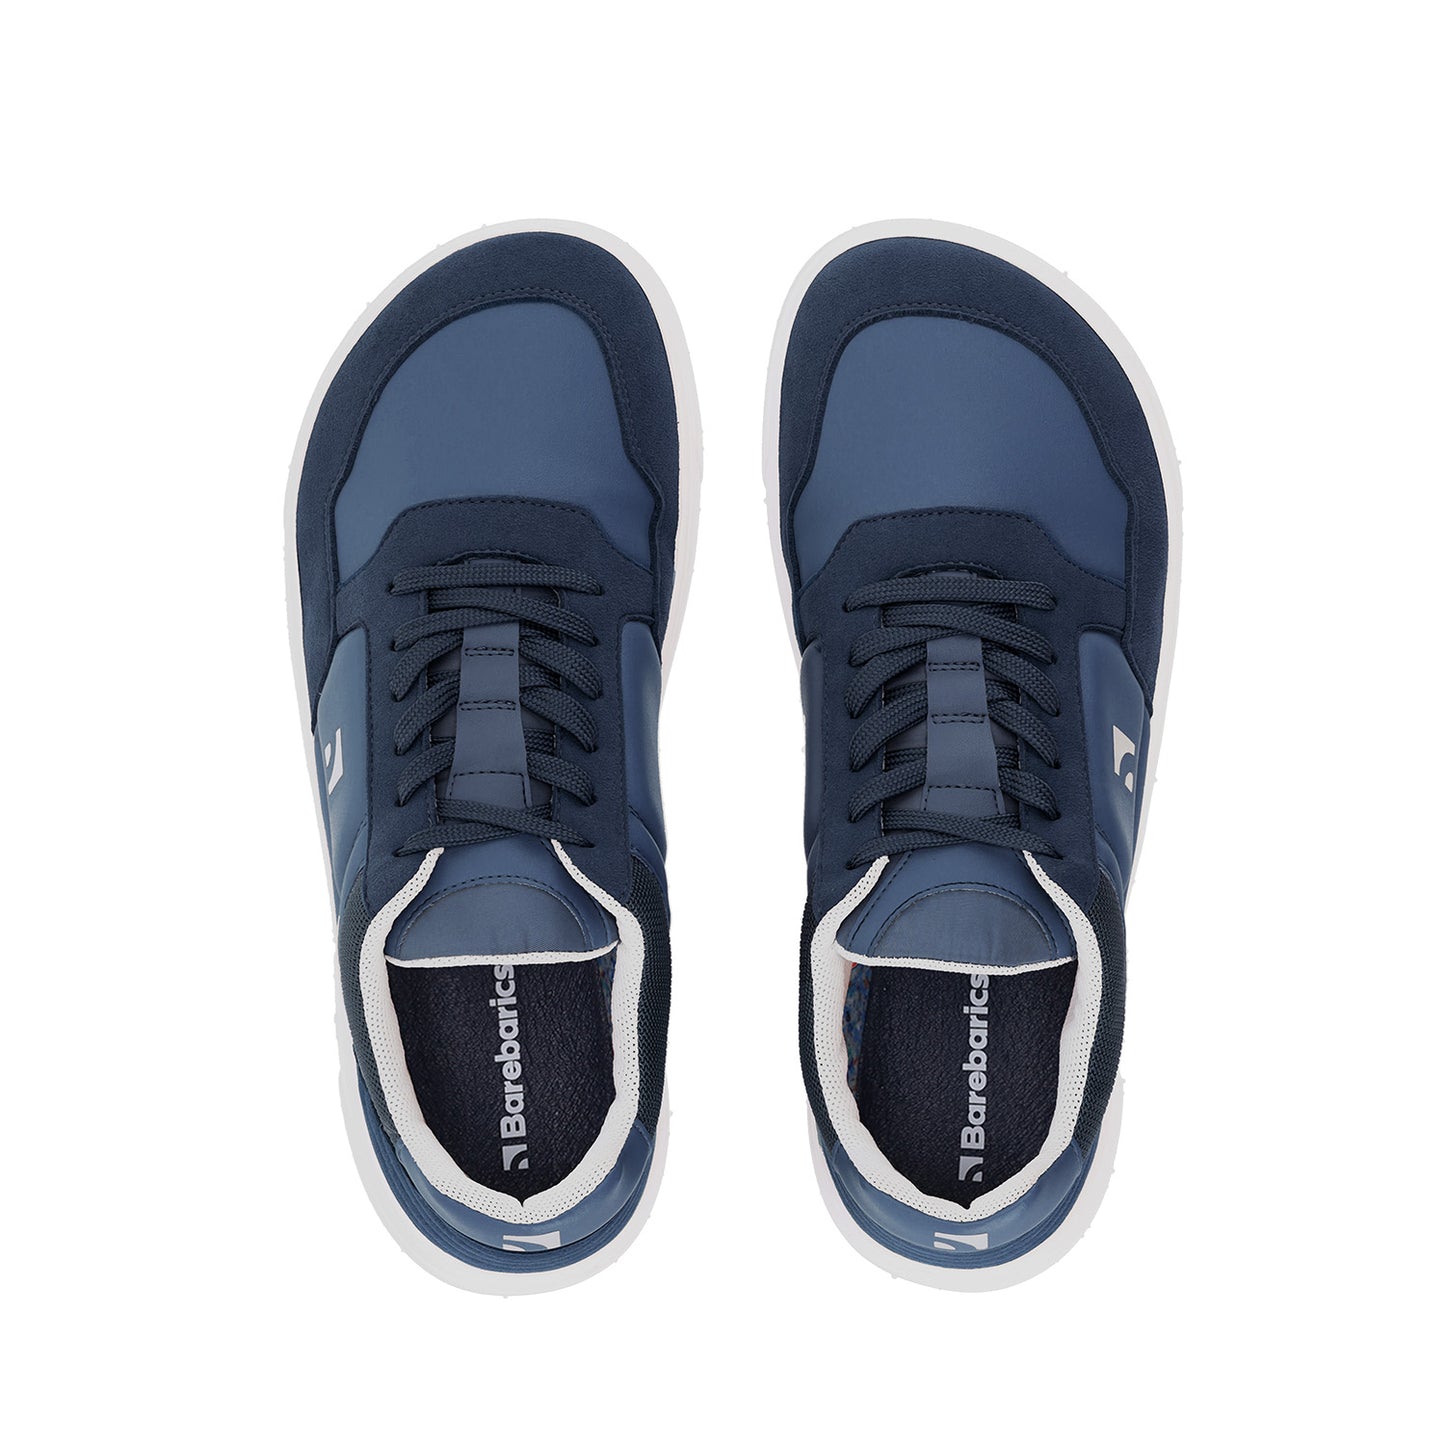 Barebarics Axiom Barefoot Sneakers - Dark Blue & White